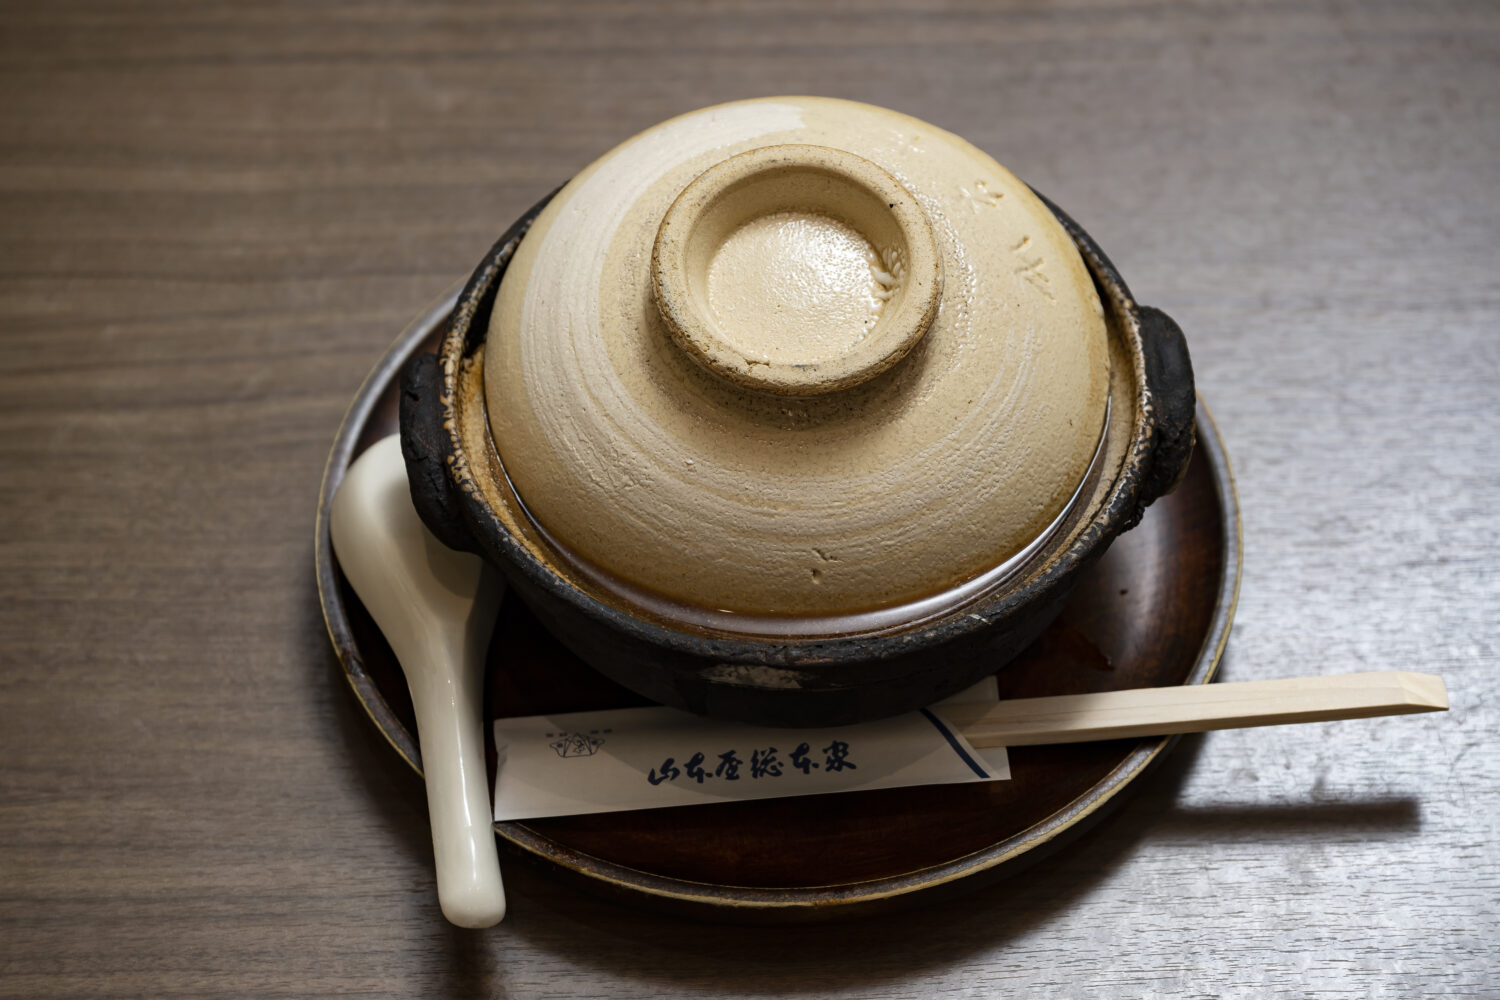 山本屋総本家の味噌煮込みうどんは、この状態で供されます。立派な土鍋です。